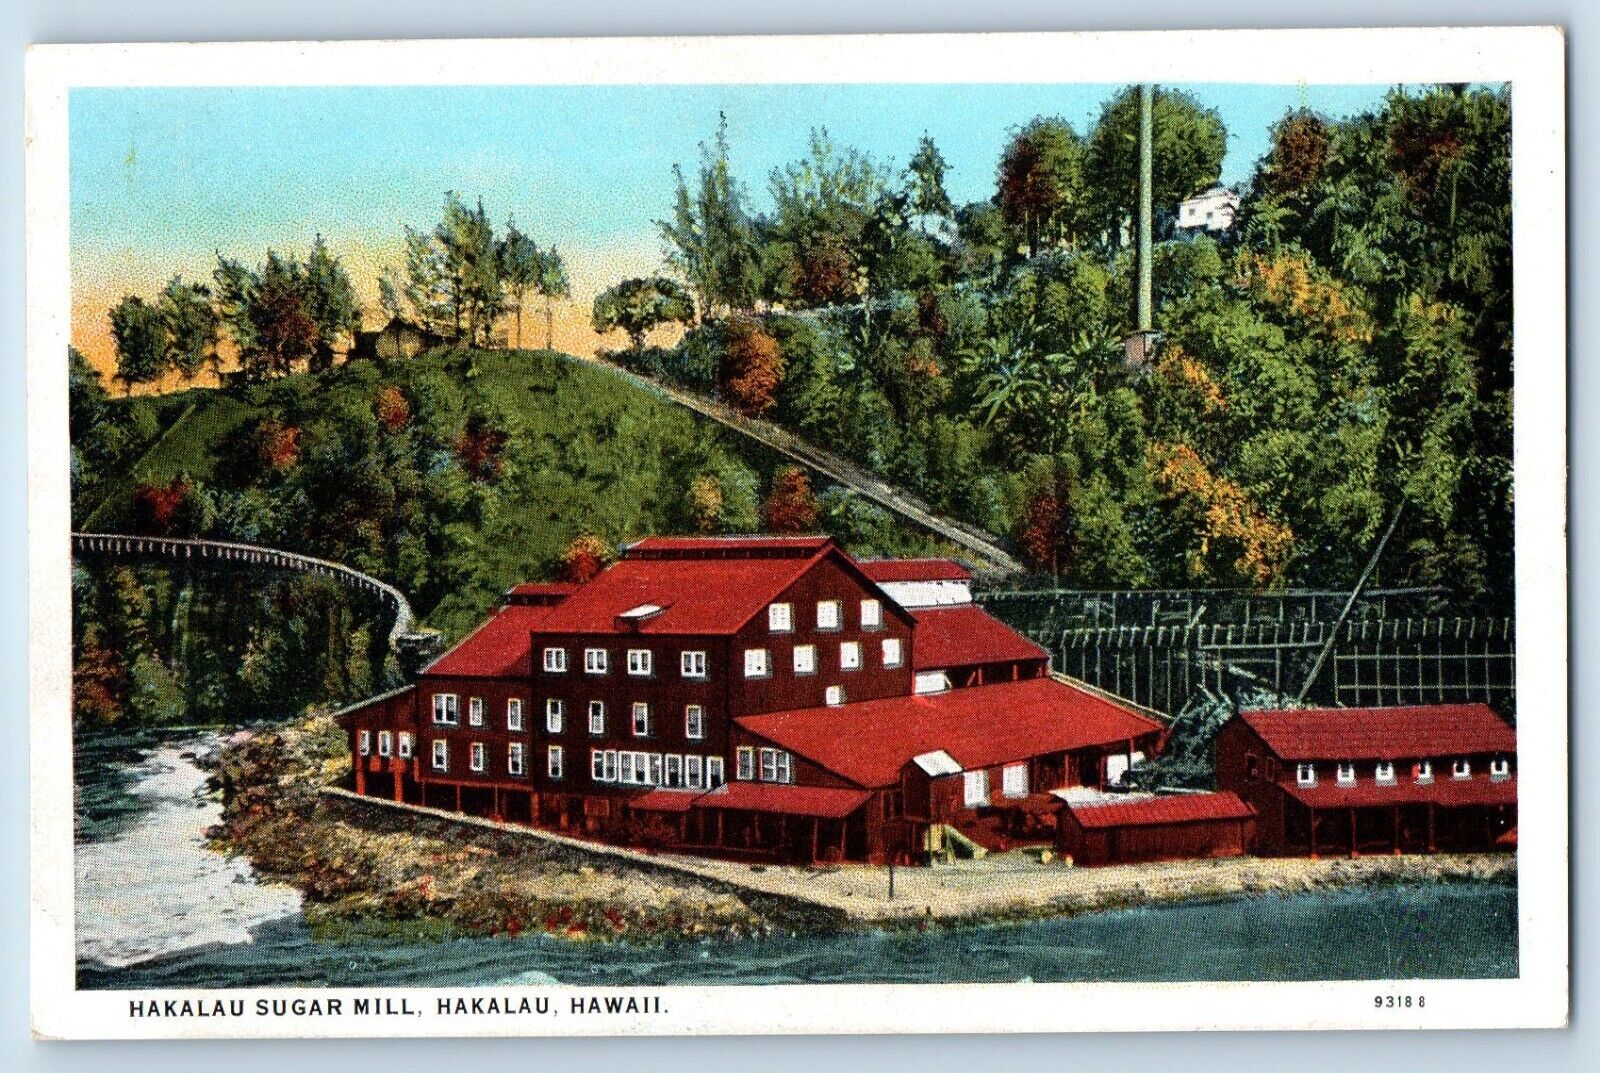 Hakalau Hawaii HI Postcard Hakalau Sugar Mill Aerial View Building 1920 Vintage